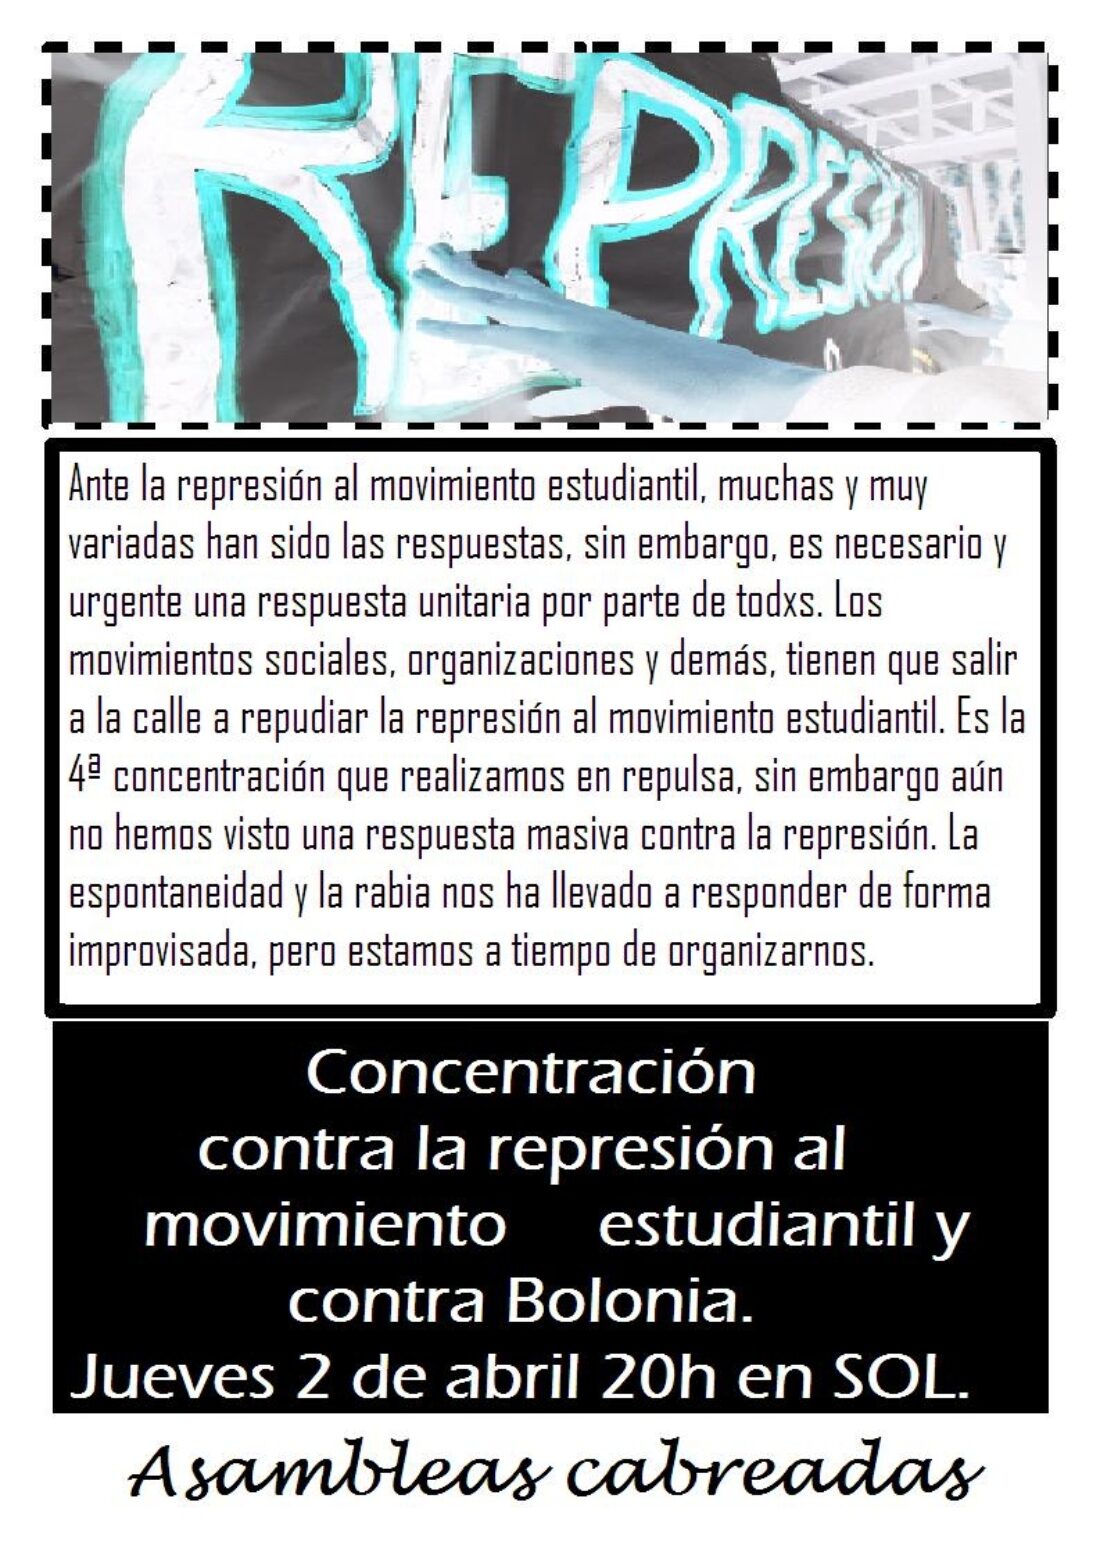 Madrid : 2 de abril, 4ª Concentración contra la represión al movimiento estudiantil